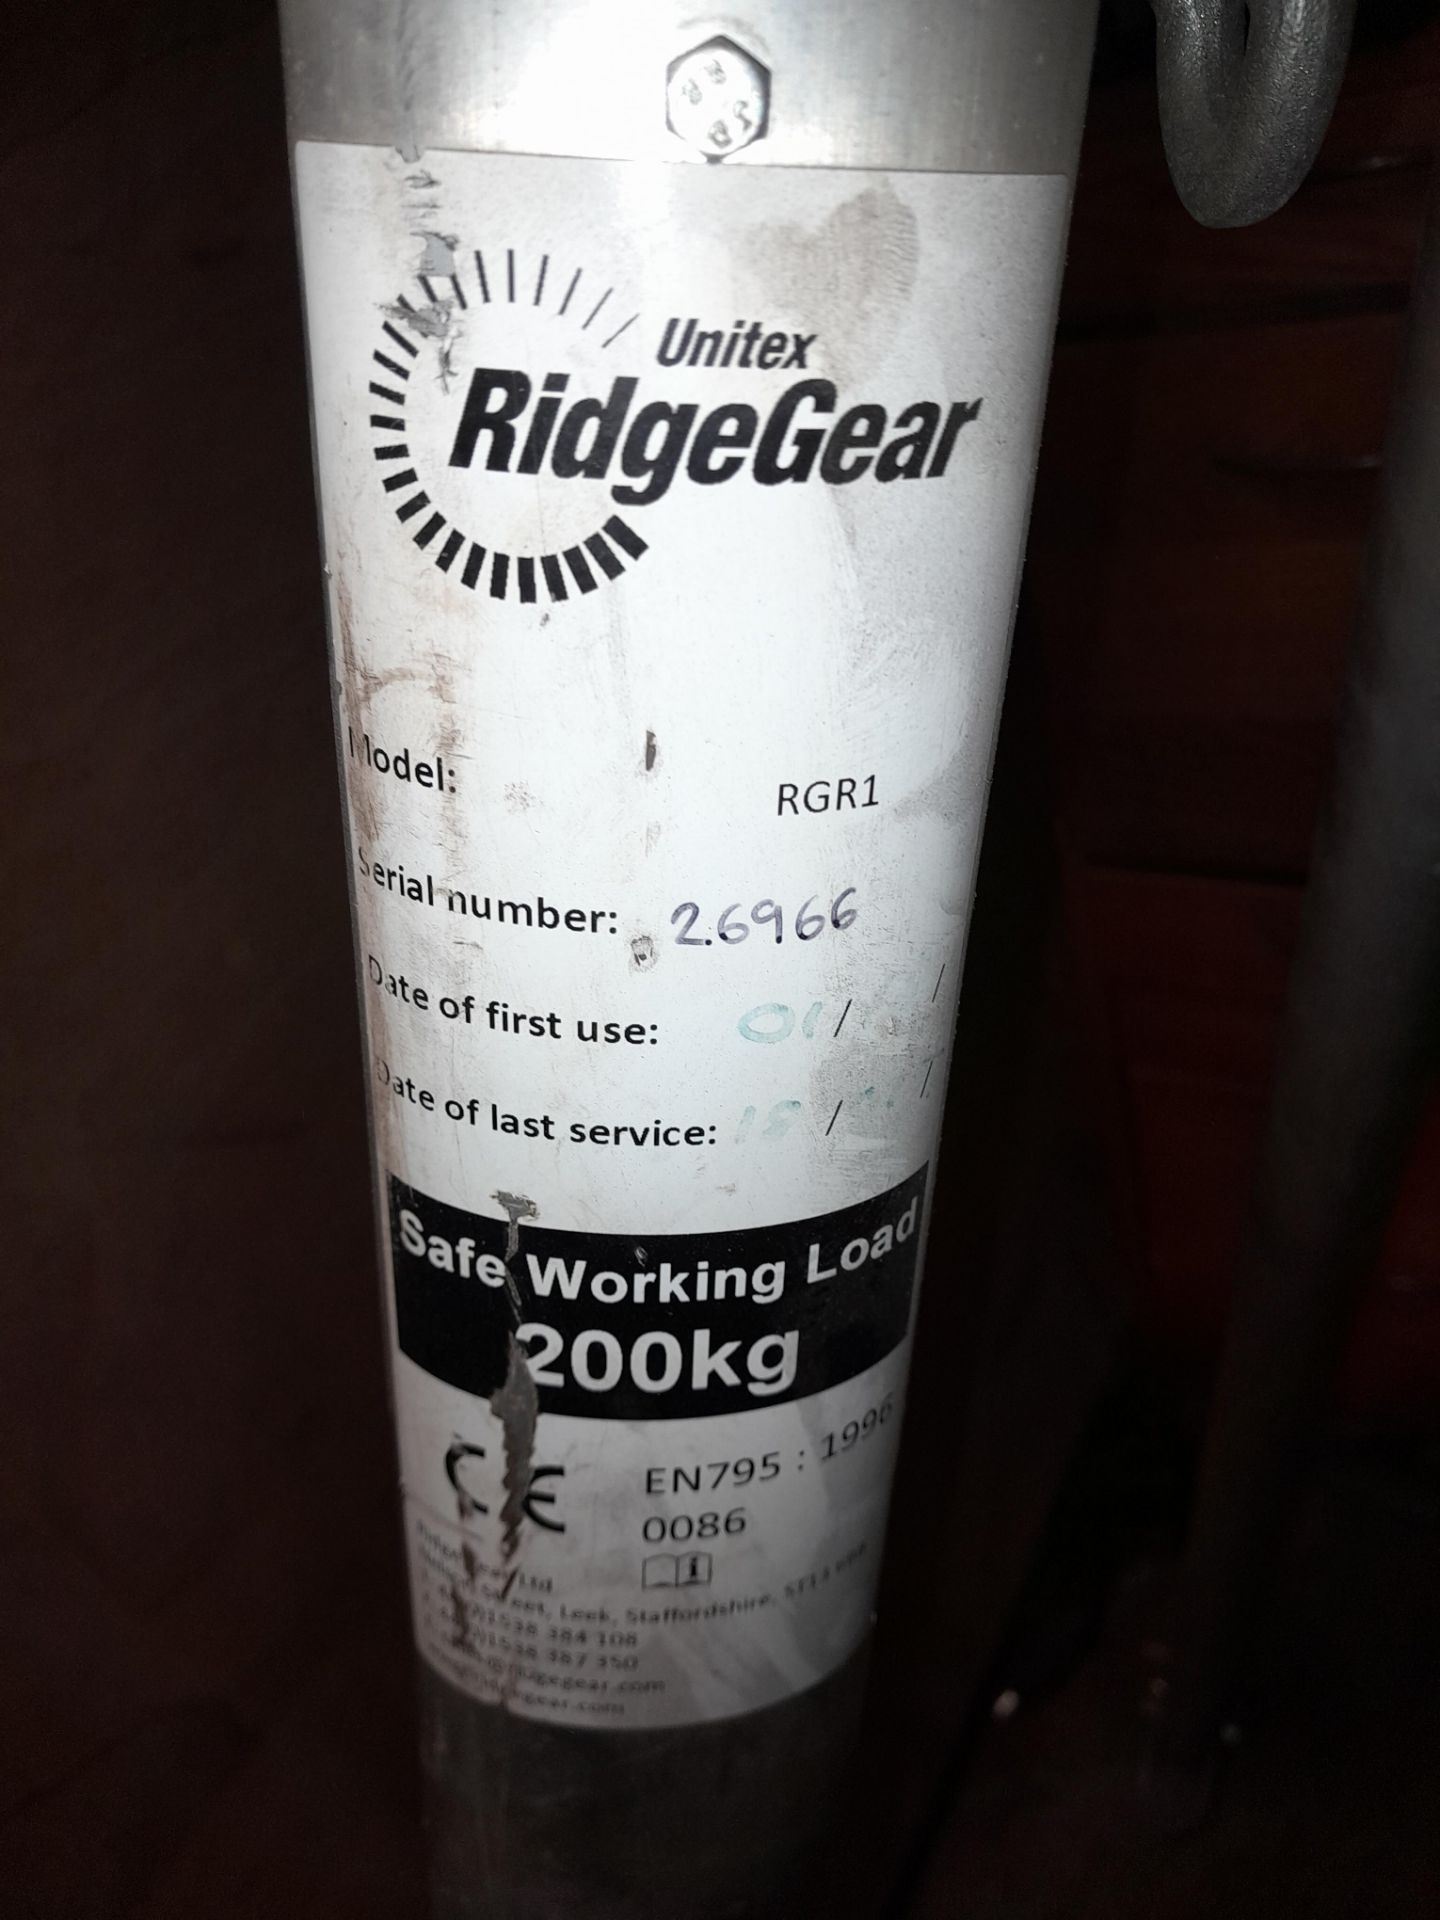 Unitex RidgeGear RGR1, 2.7m Aluminium Tripod, Serial Number 26966 - Image 3 of 4